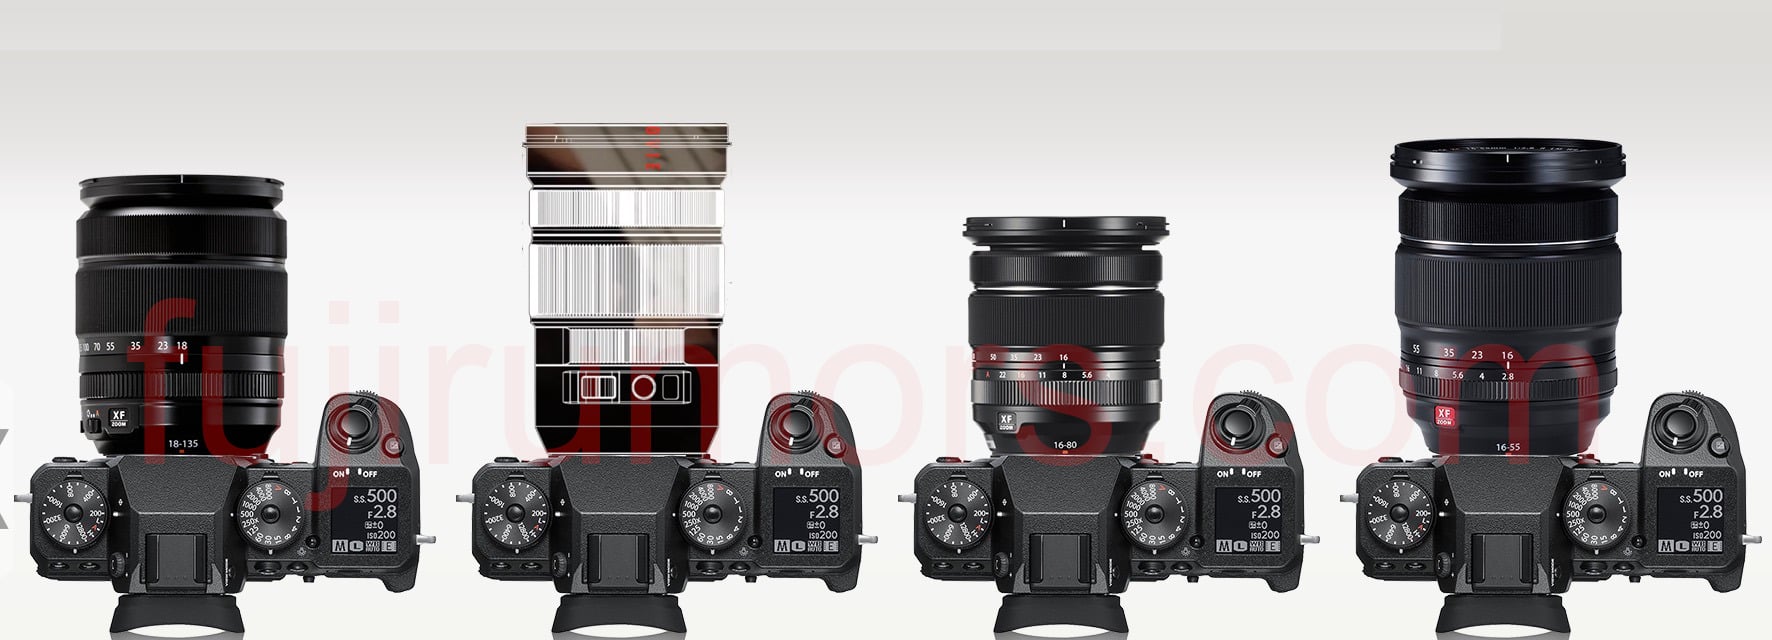 Ống kính Fujifilm XF 18-120mm đang phát triển sẽ có khẩu độ F4 toàn dải tiêu tự